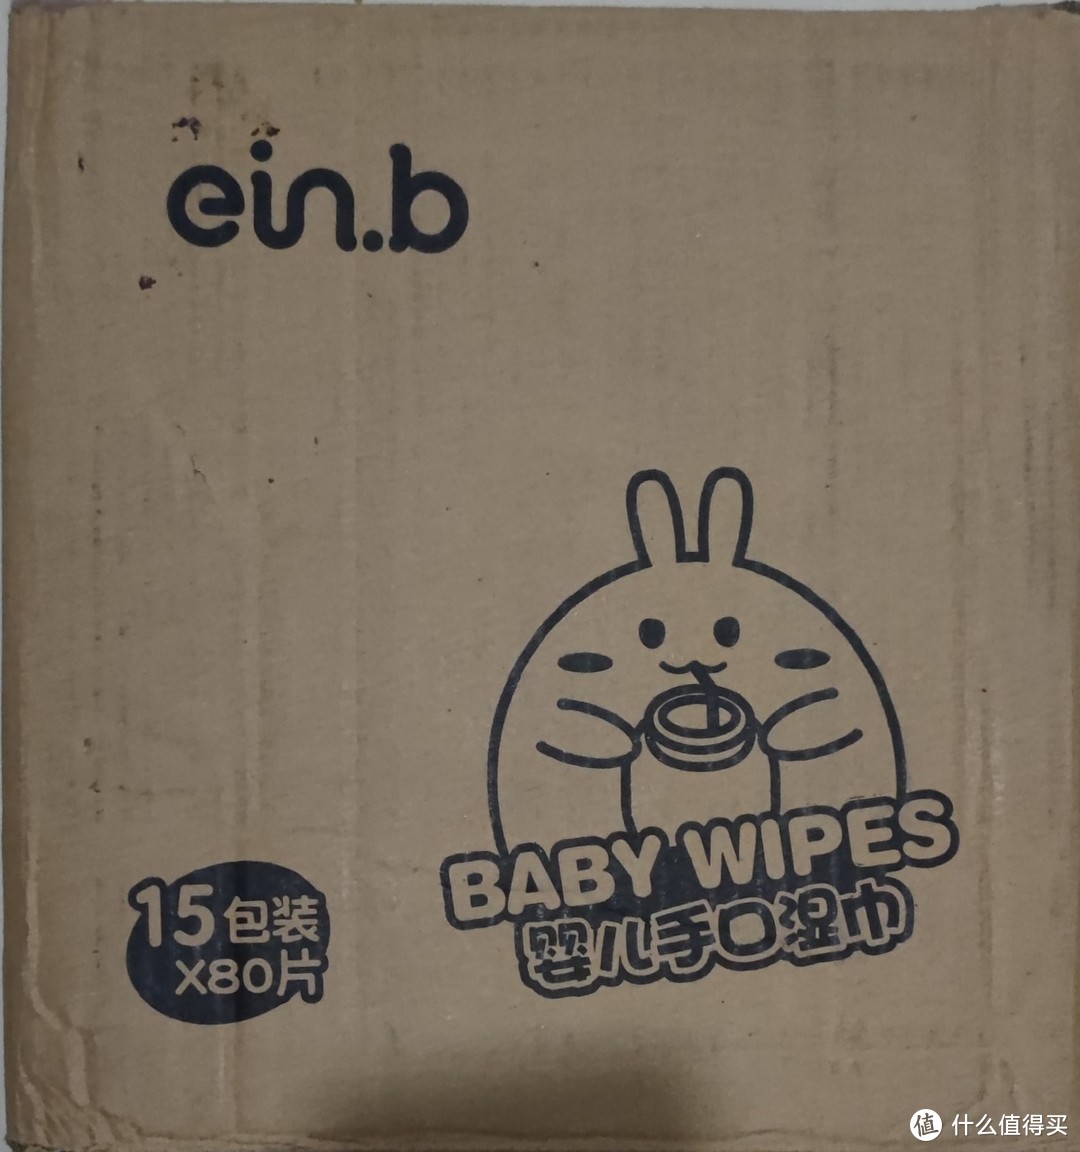 婴儿手口湿巾的囤货选择，便携与安全